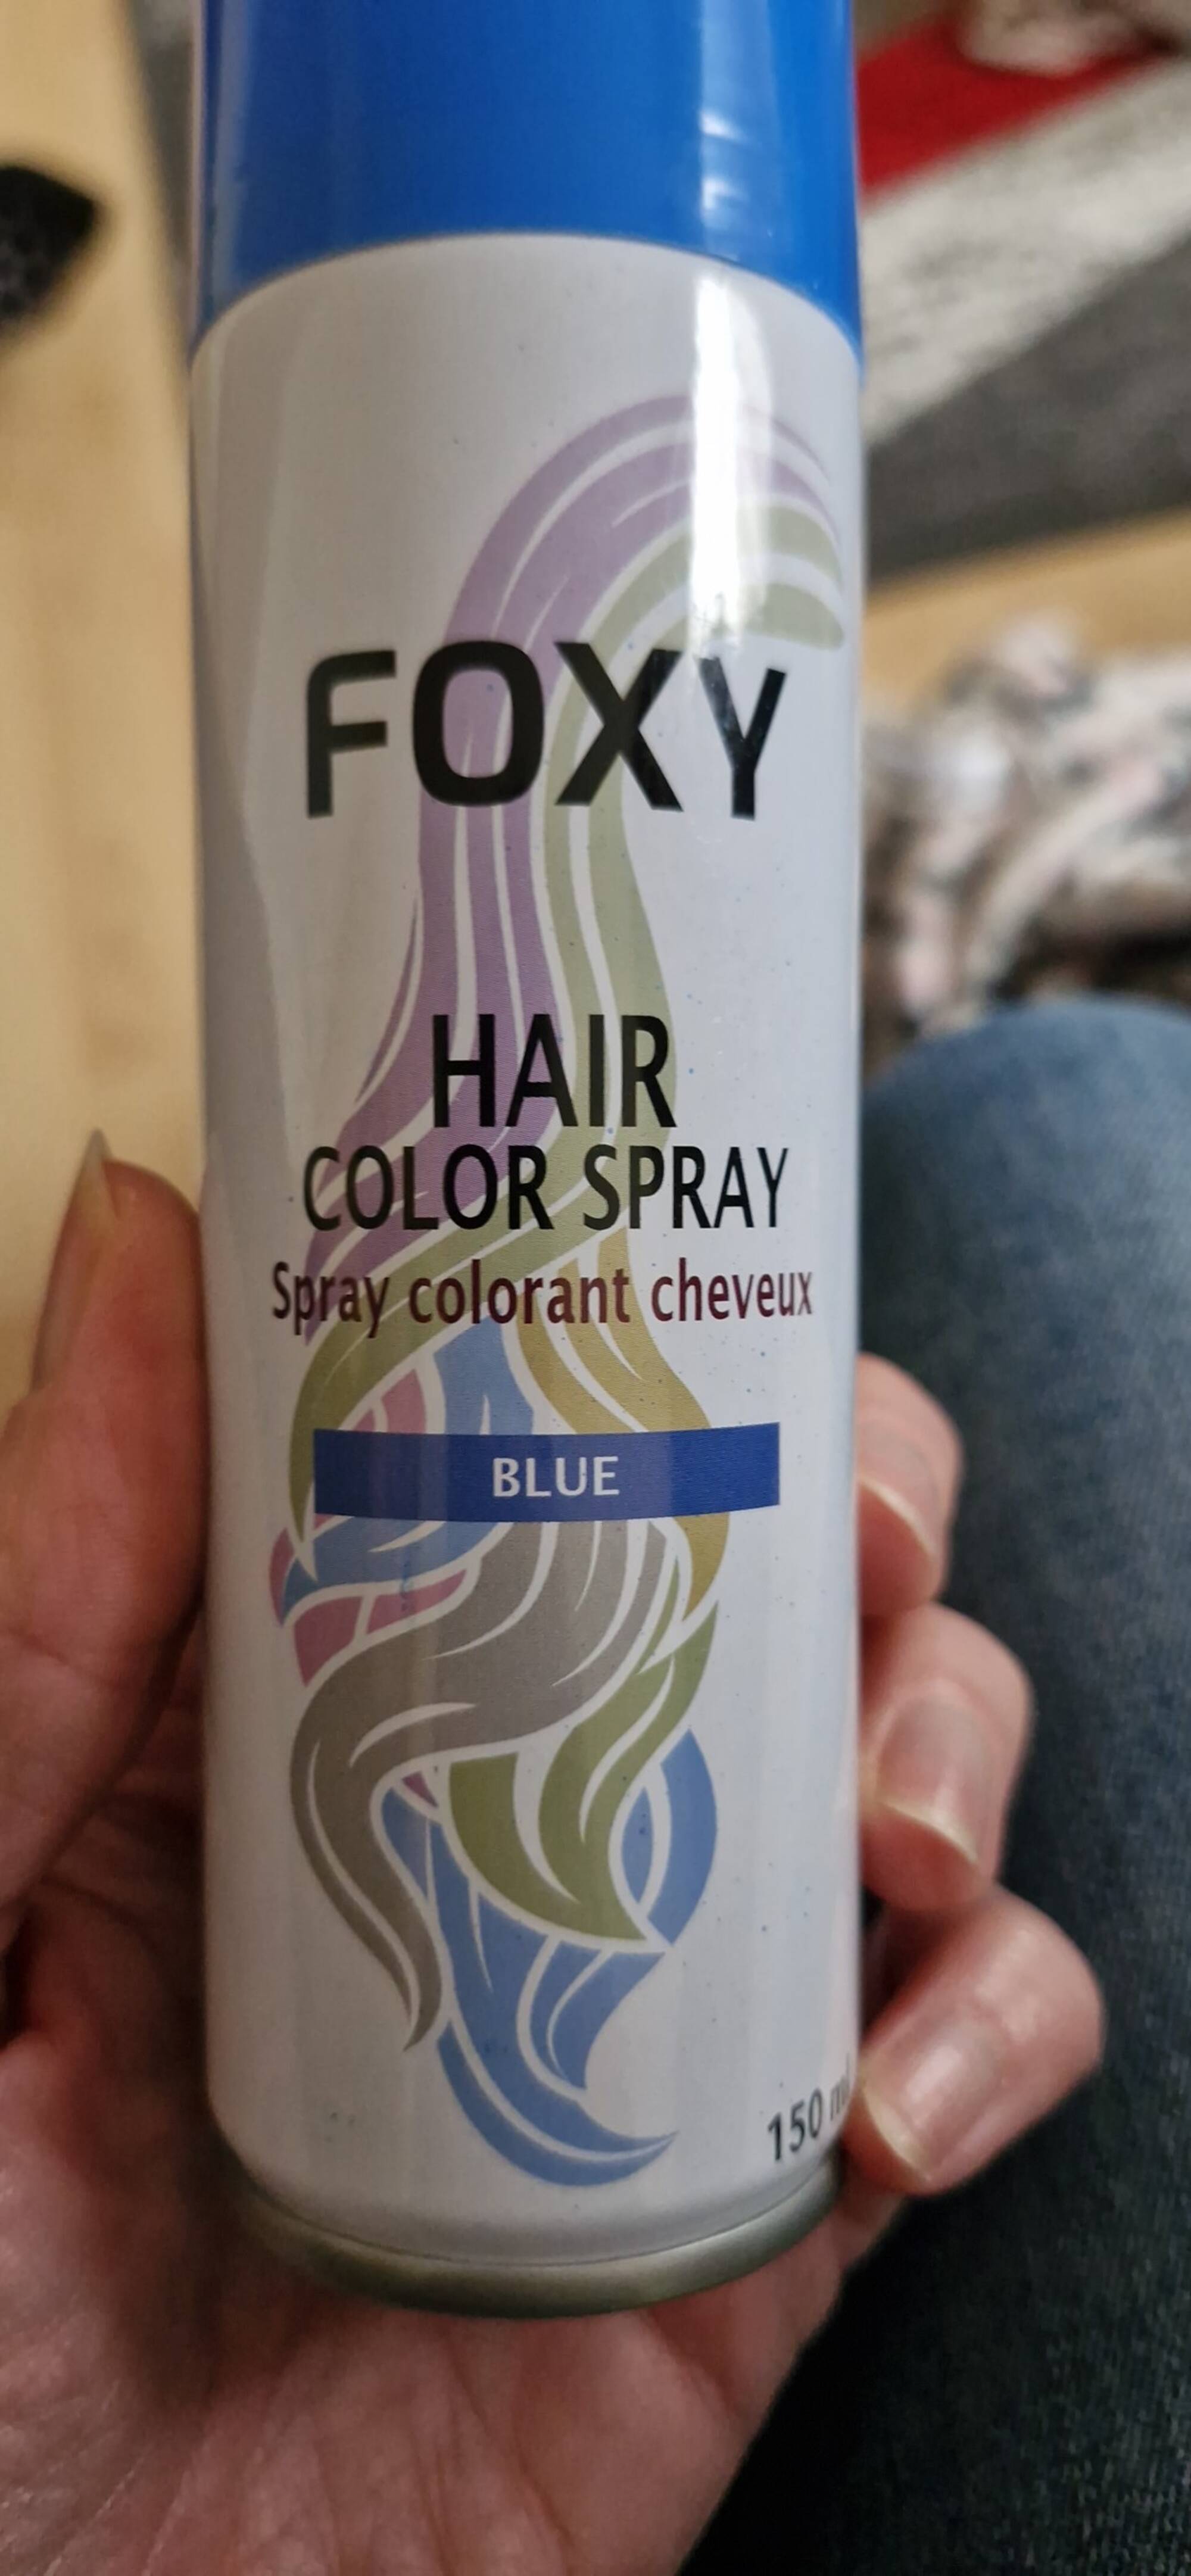 FOXY - Spray colorant cheveux blue